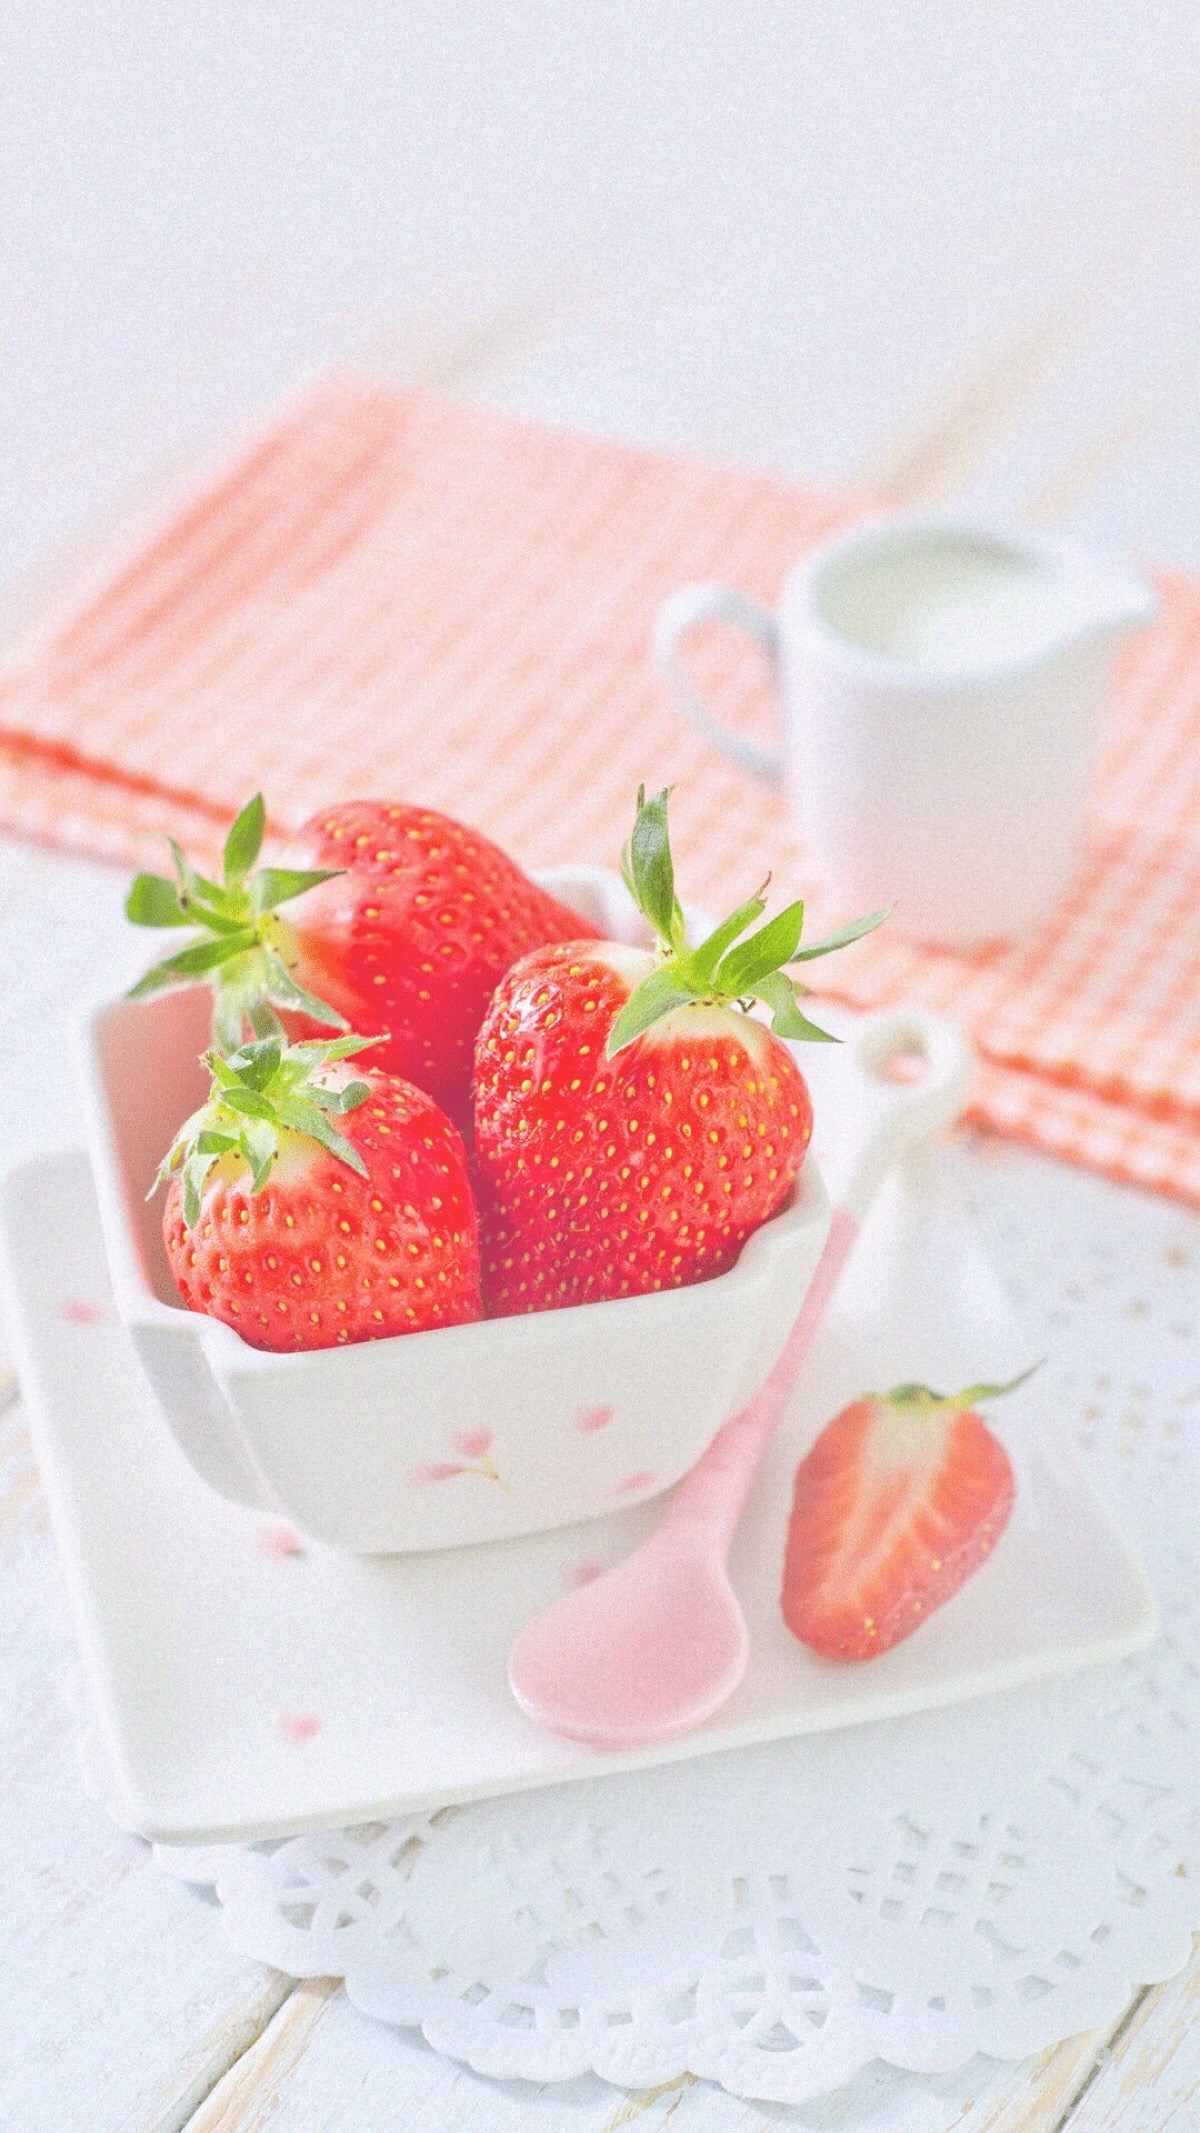 壁纸 粉色 草莓 少女心